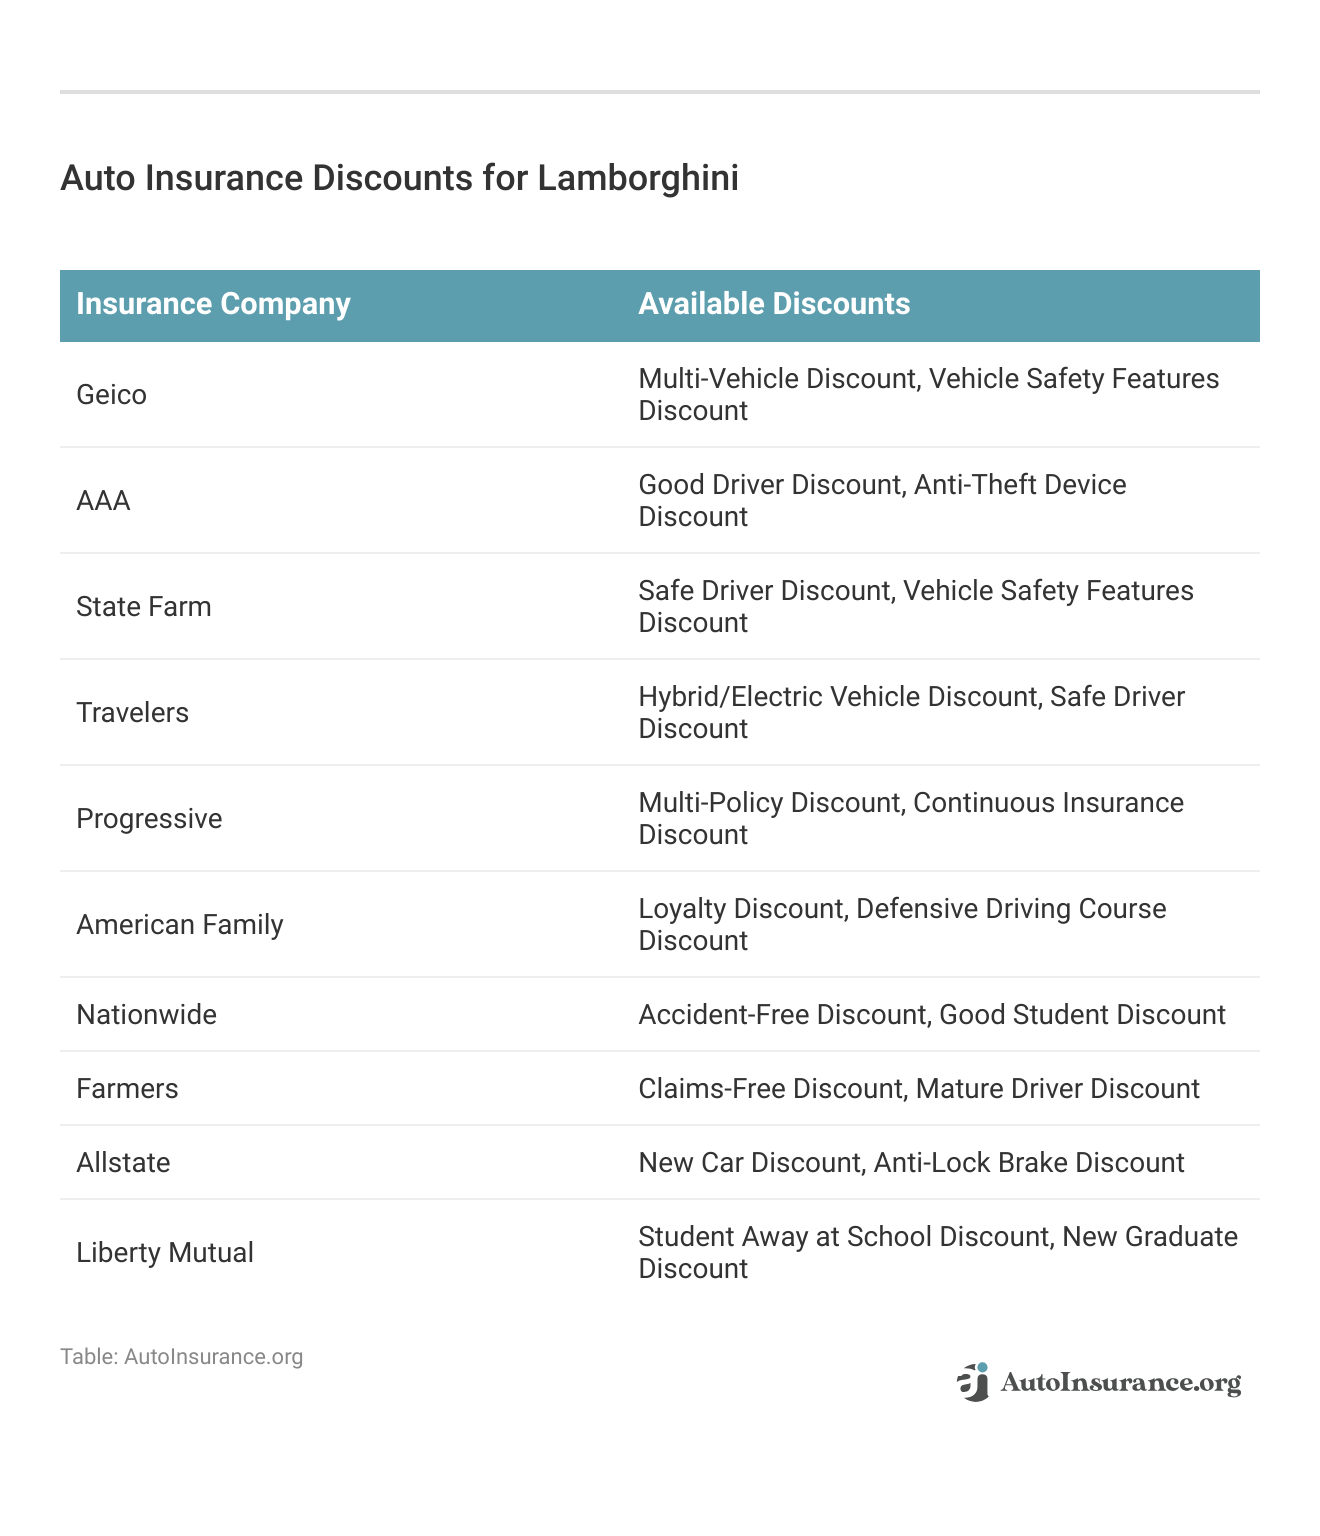 <h3>Auto Insurance Discounts for Lamborghini</h3> 